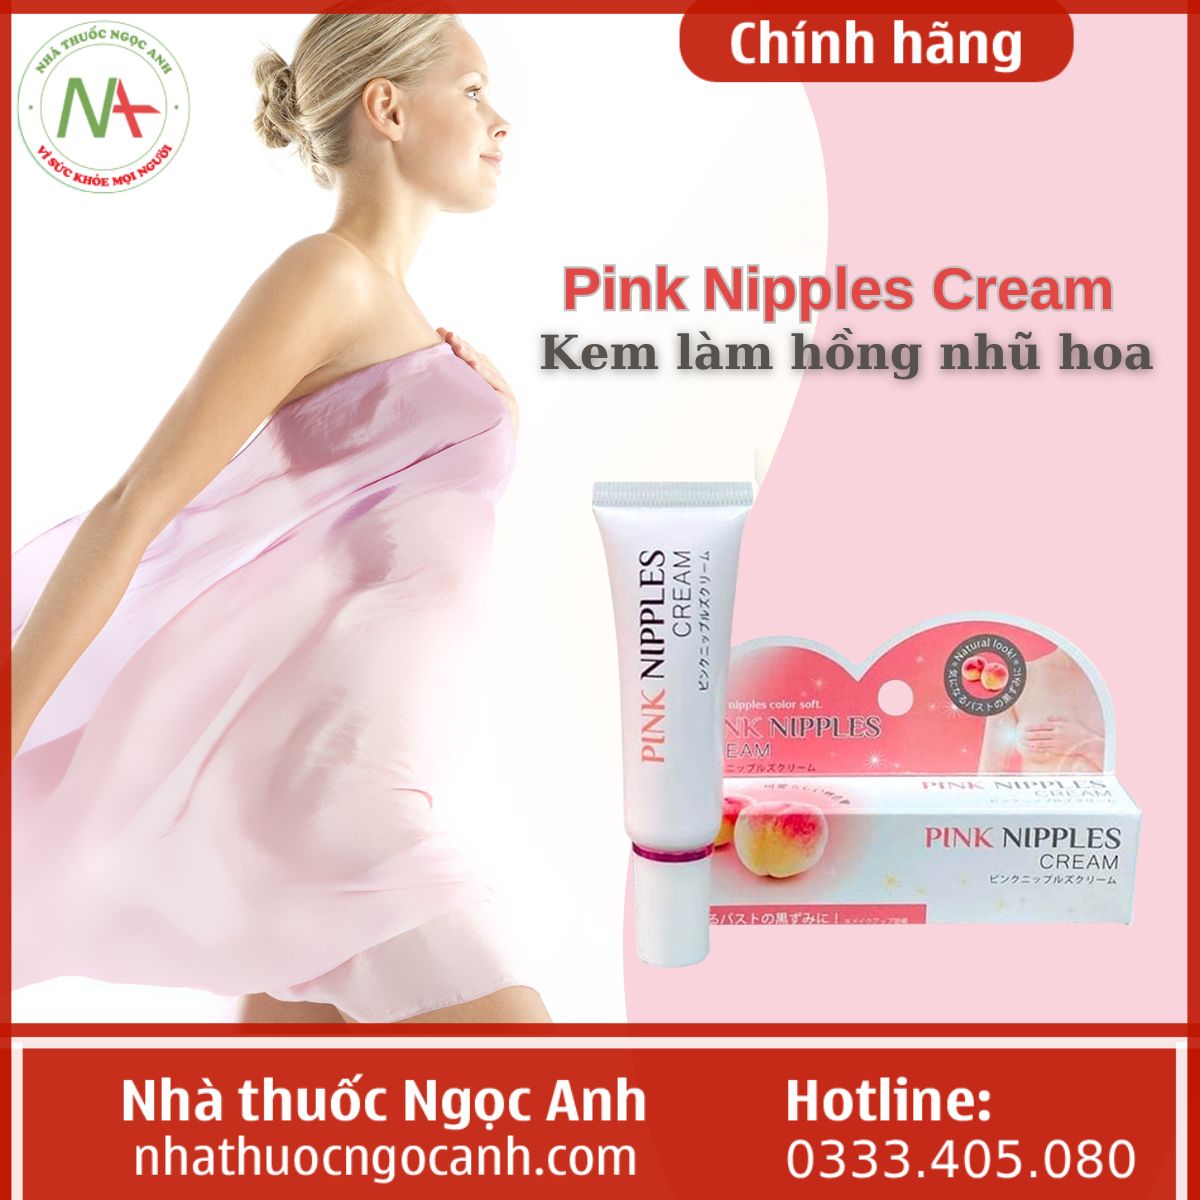 Pink Nipples Cream làm hồng nhũ hoa